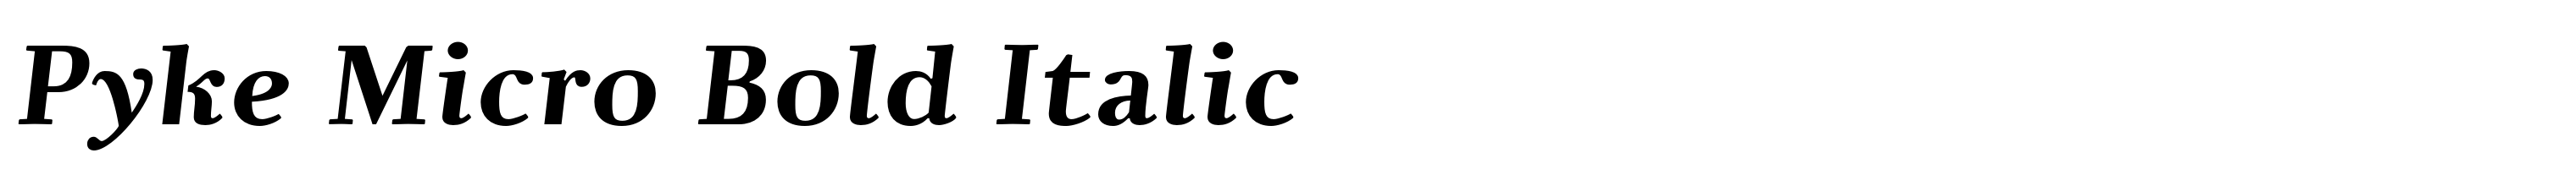 Pyke Micro Bold Italic